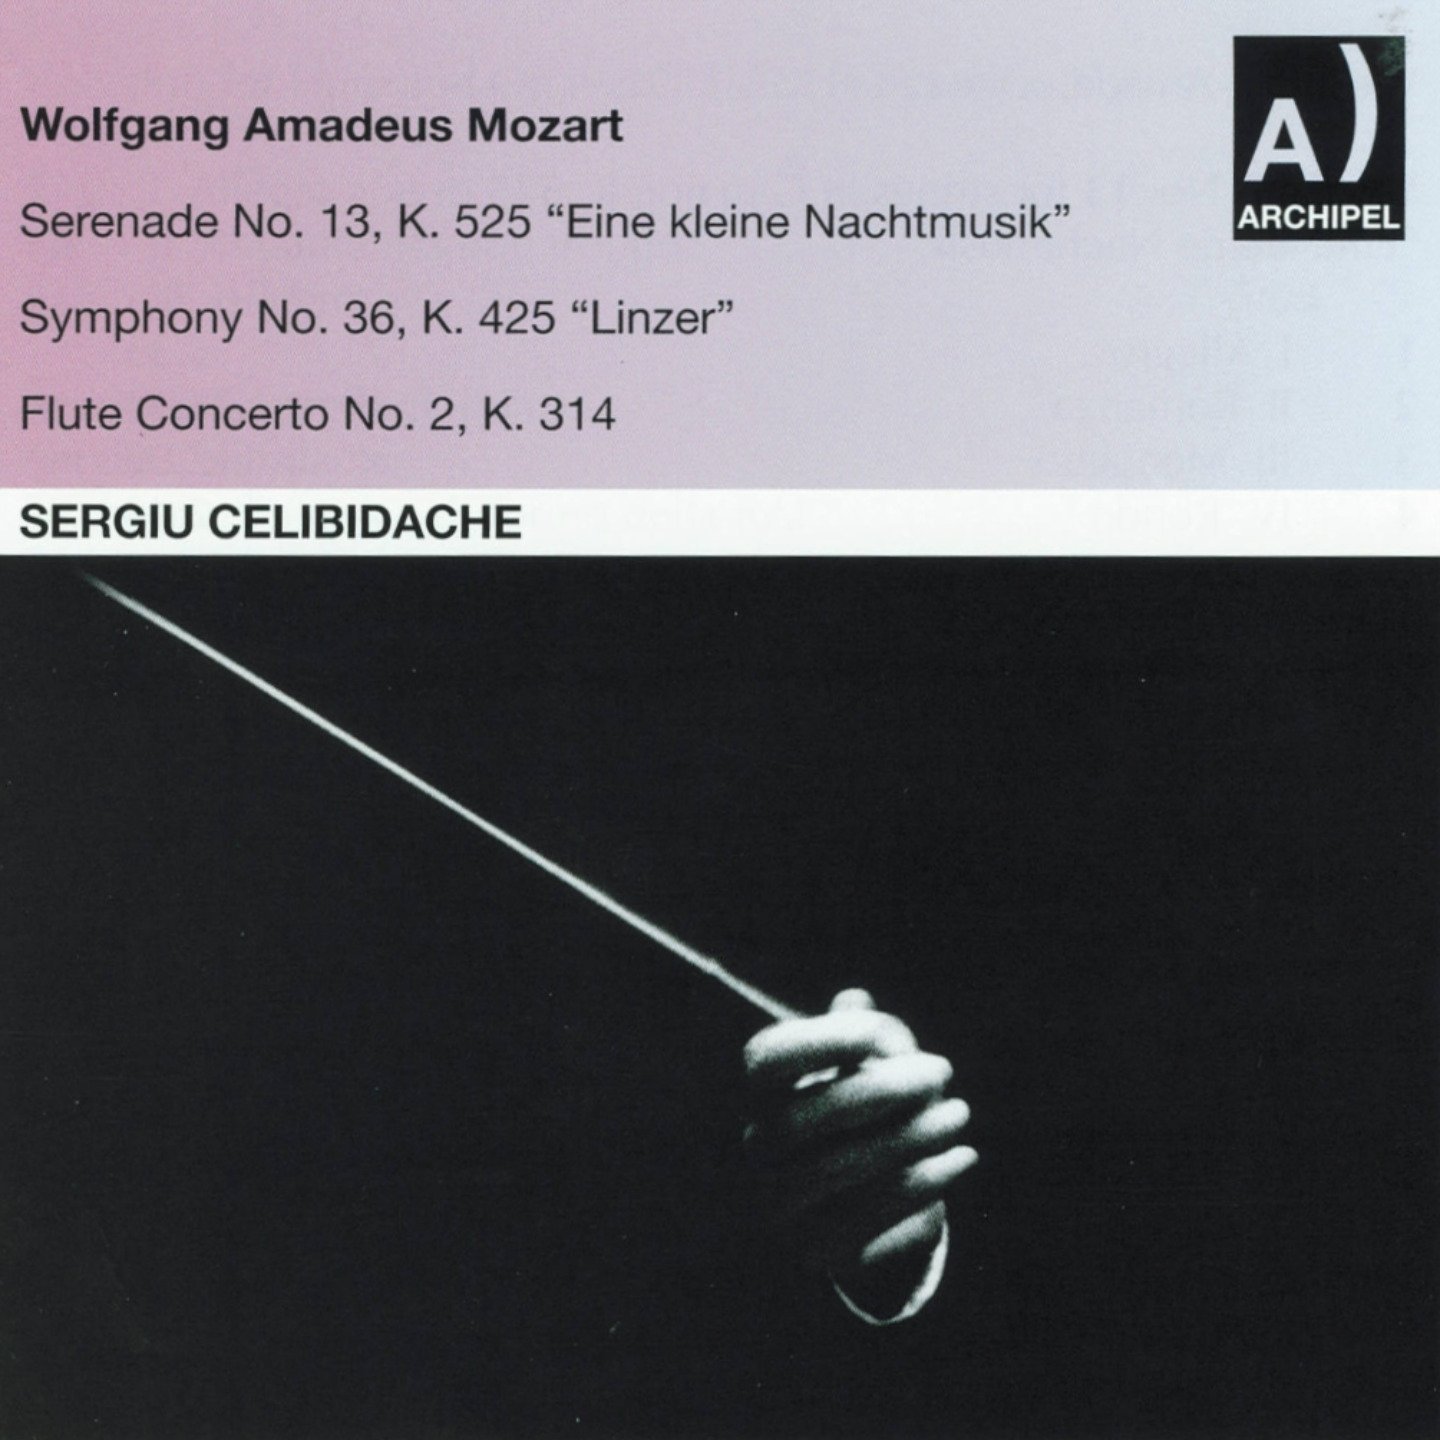 Serenade No.13, Symfonie No.36, Flute Concerto No. 2 | Sergiu Celibidache, Wolfgang Amadeus Mozart